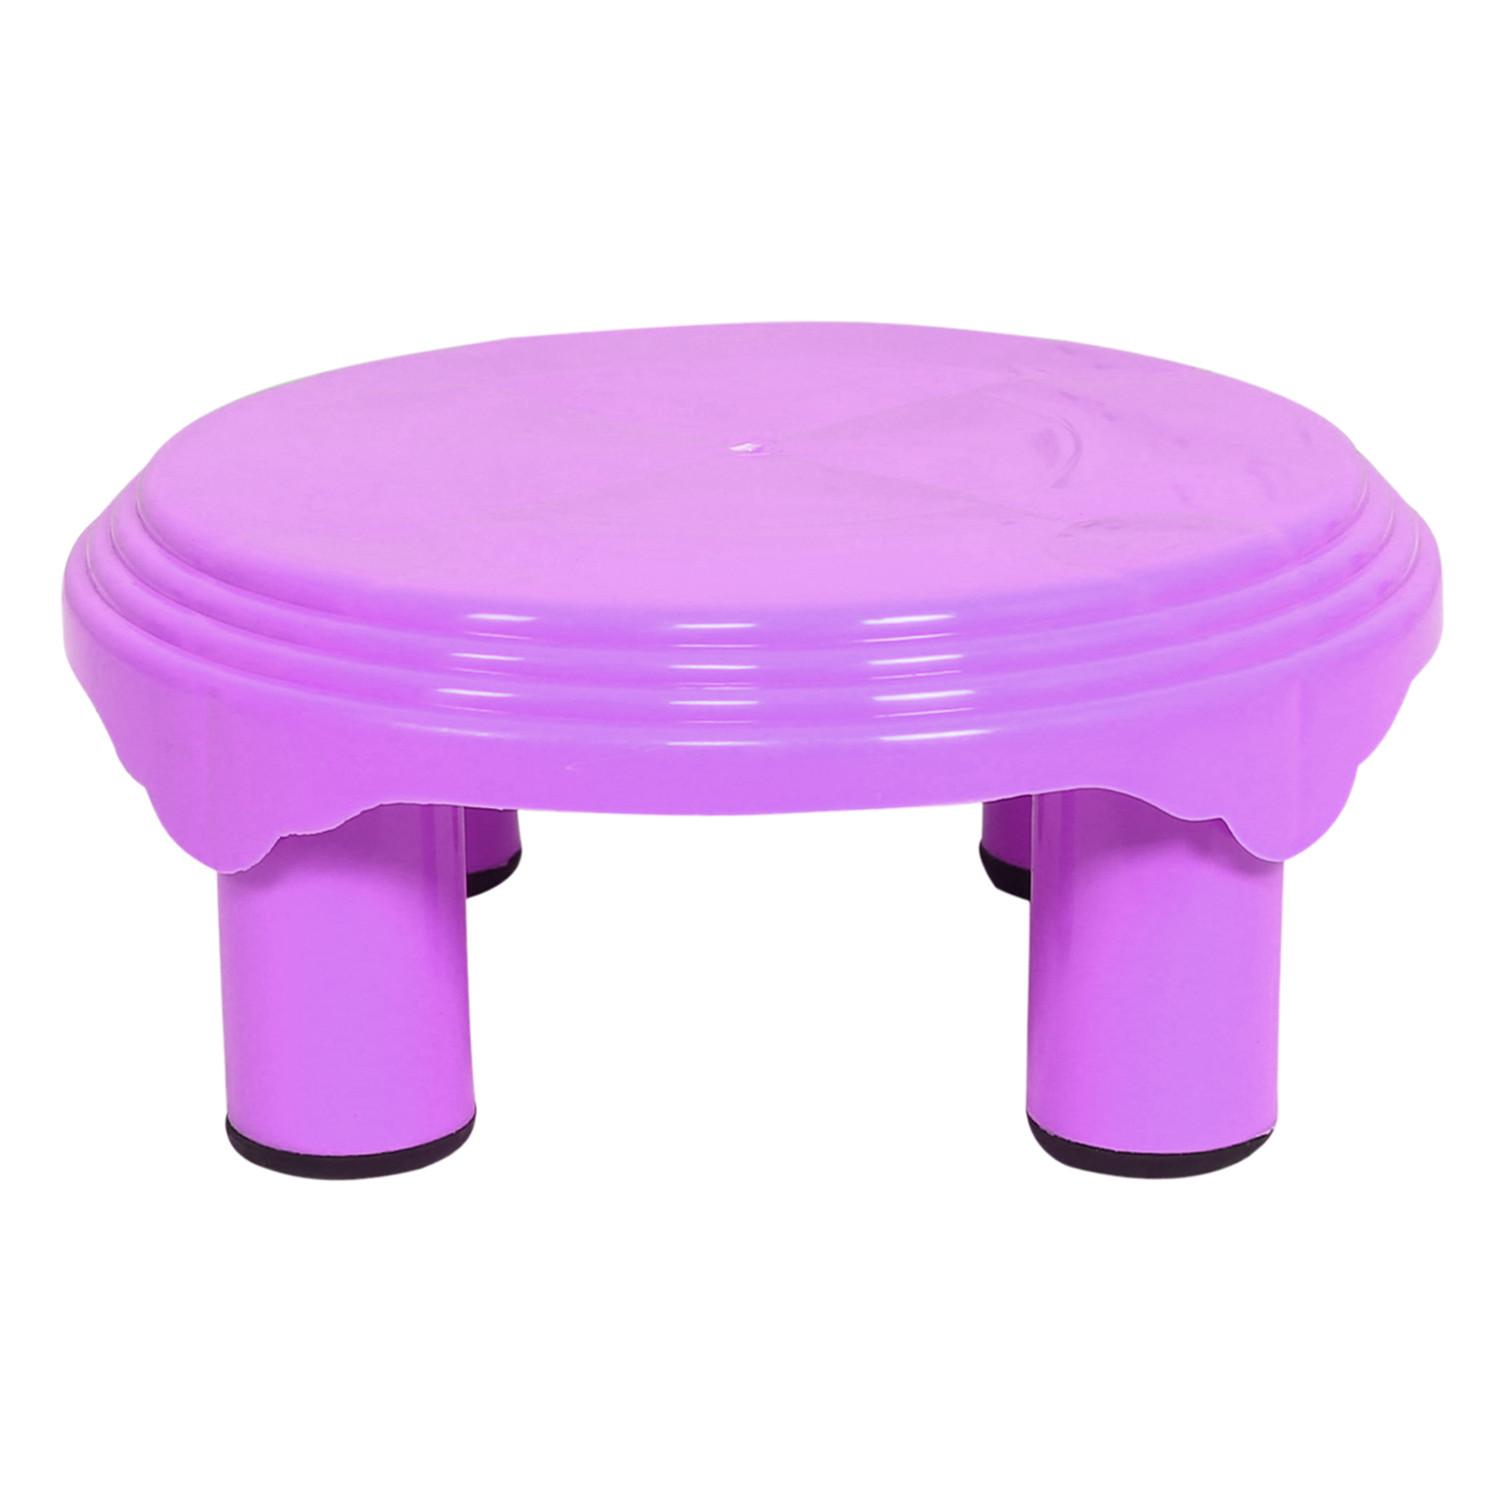 Kuber Industries Bathroom Stool|Plastic Stool|Anti-slip Bathing Stool|Stool for Senior Citizen|Patla for Bathroom|Pack of 2 (Sky Blue & Pink)